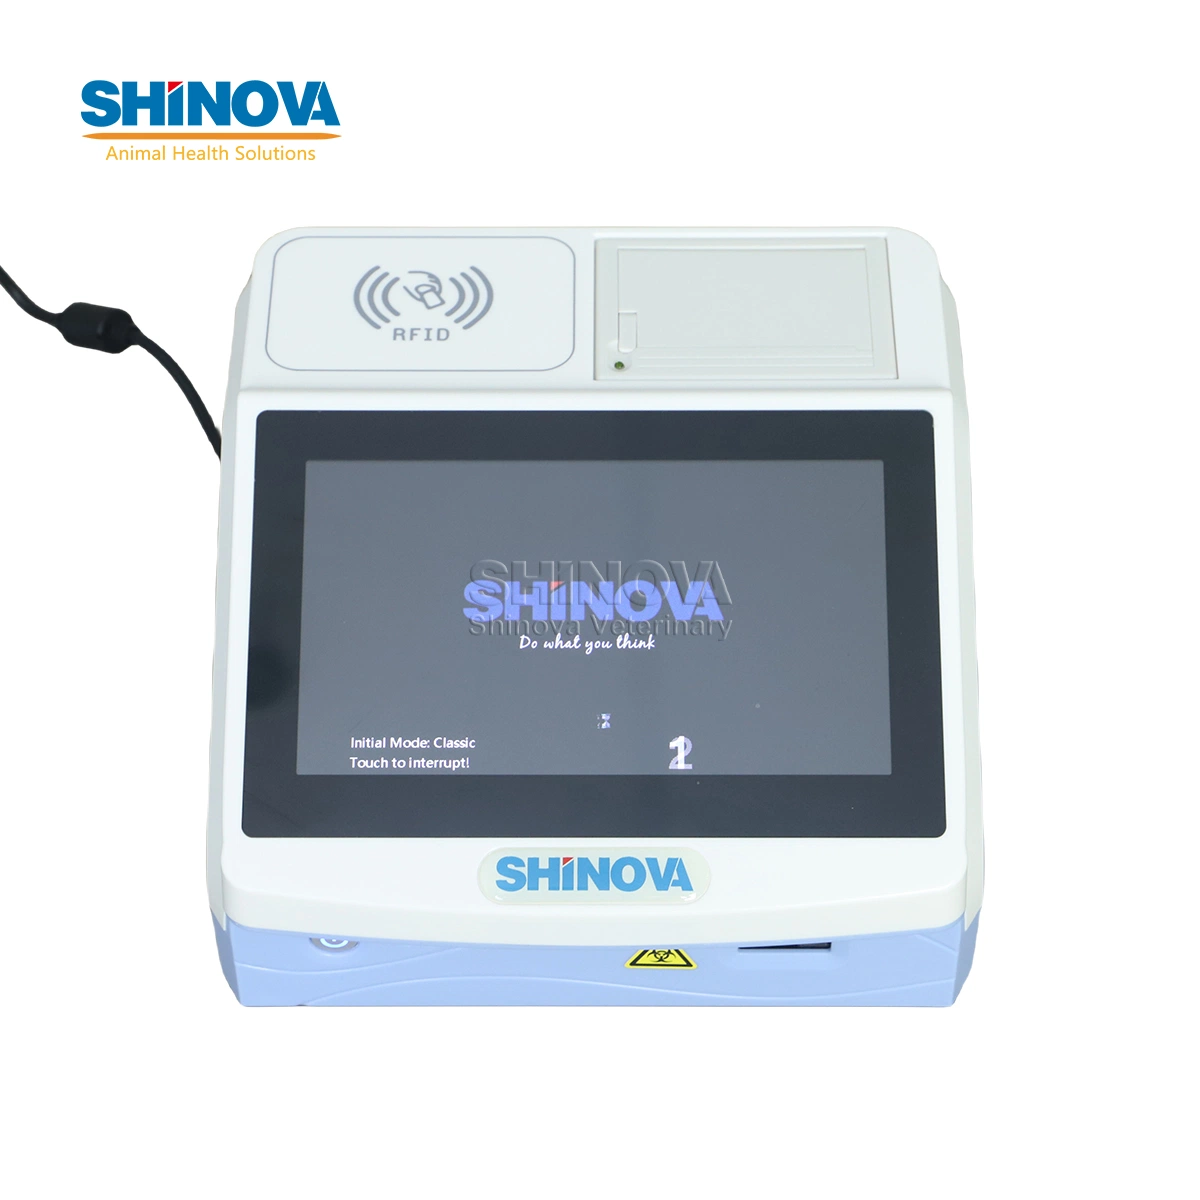 Shinova Ecrã Táctil Veterinary Fluorescence Immunoassay Analyzer Inmunofluorescência veterinária quantitativa Analisador (FQ-100)